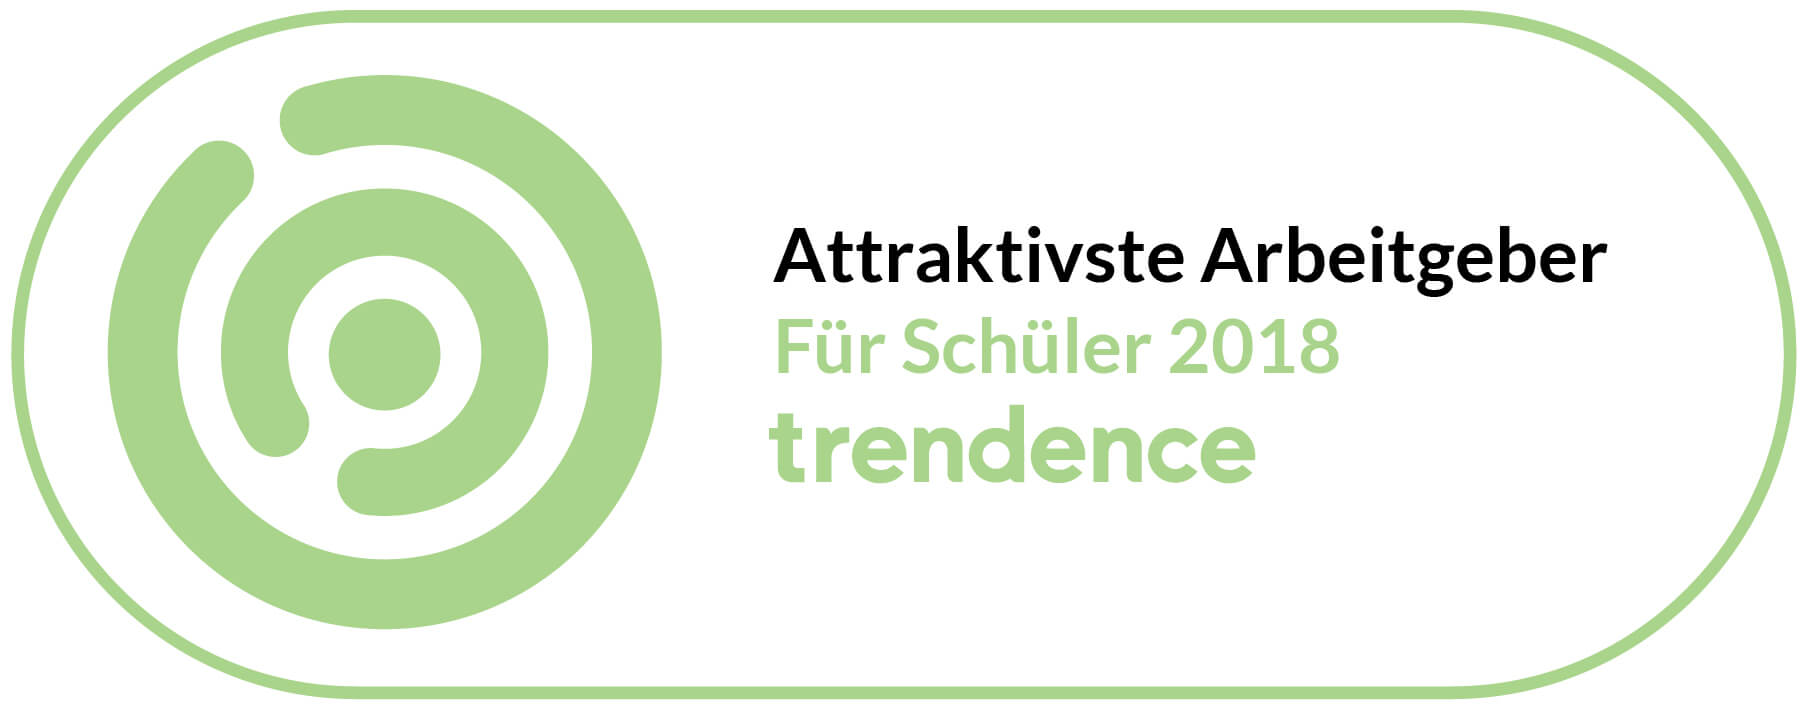 Auszeichnung Attraktivster Arbeitgeber Schueler 2018